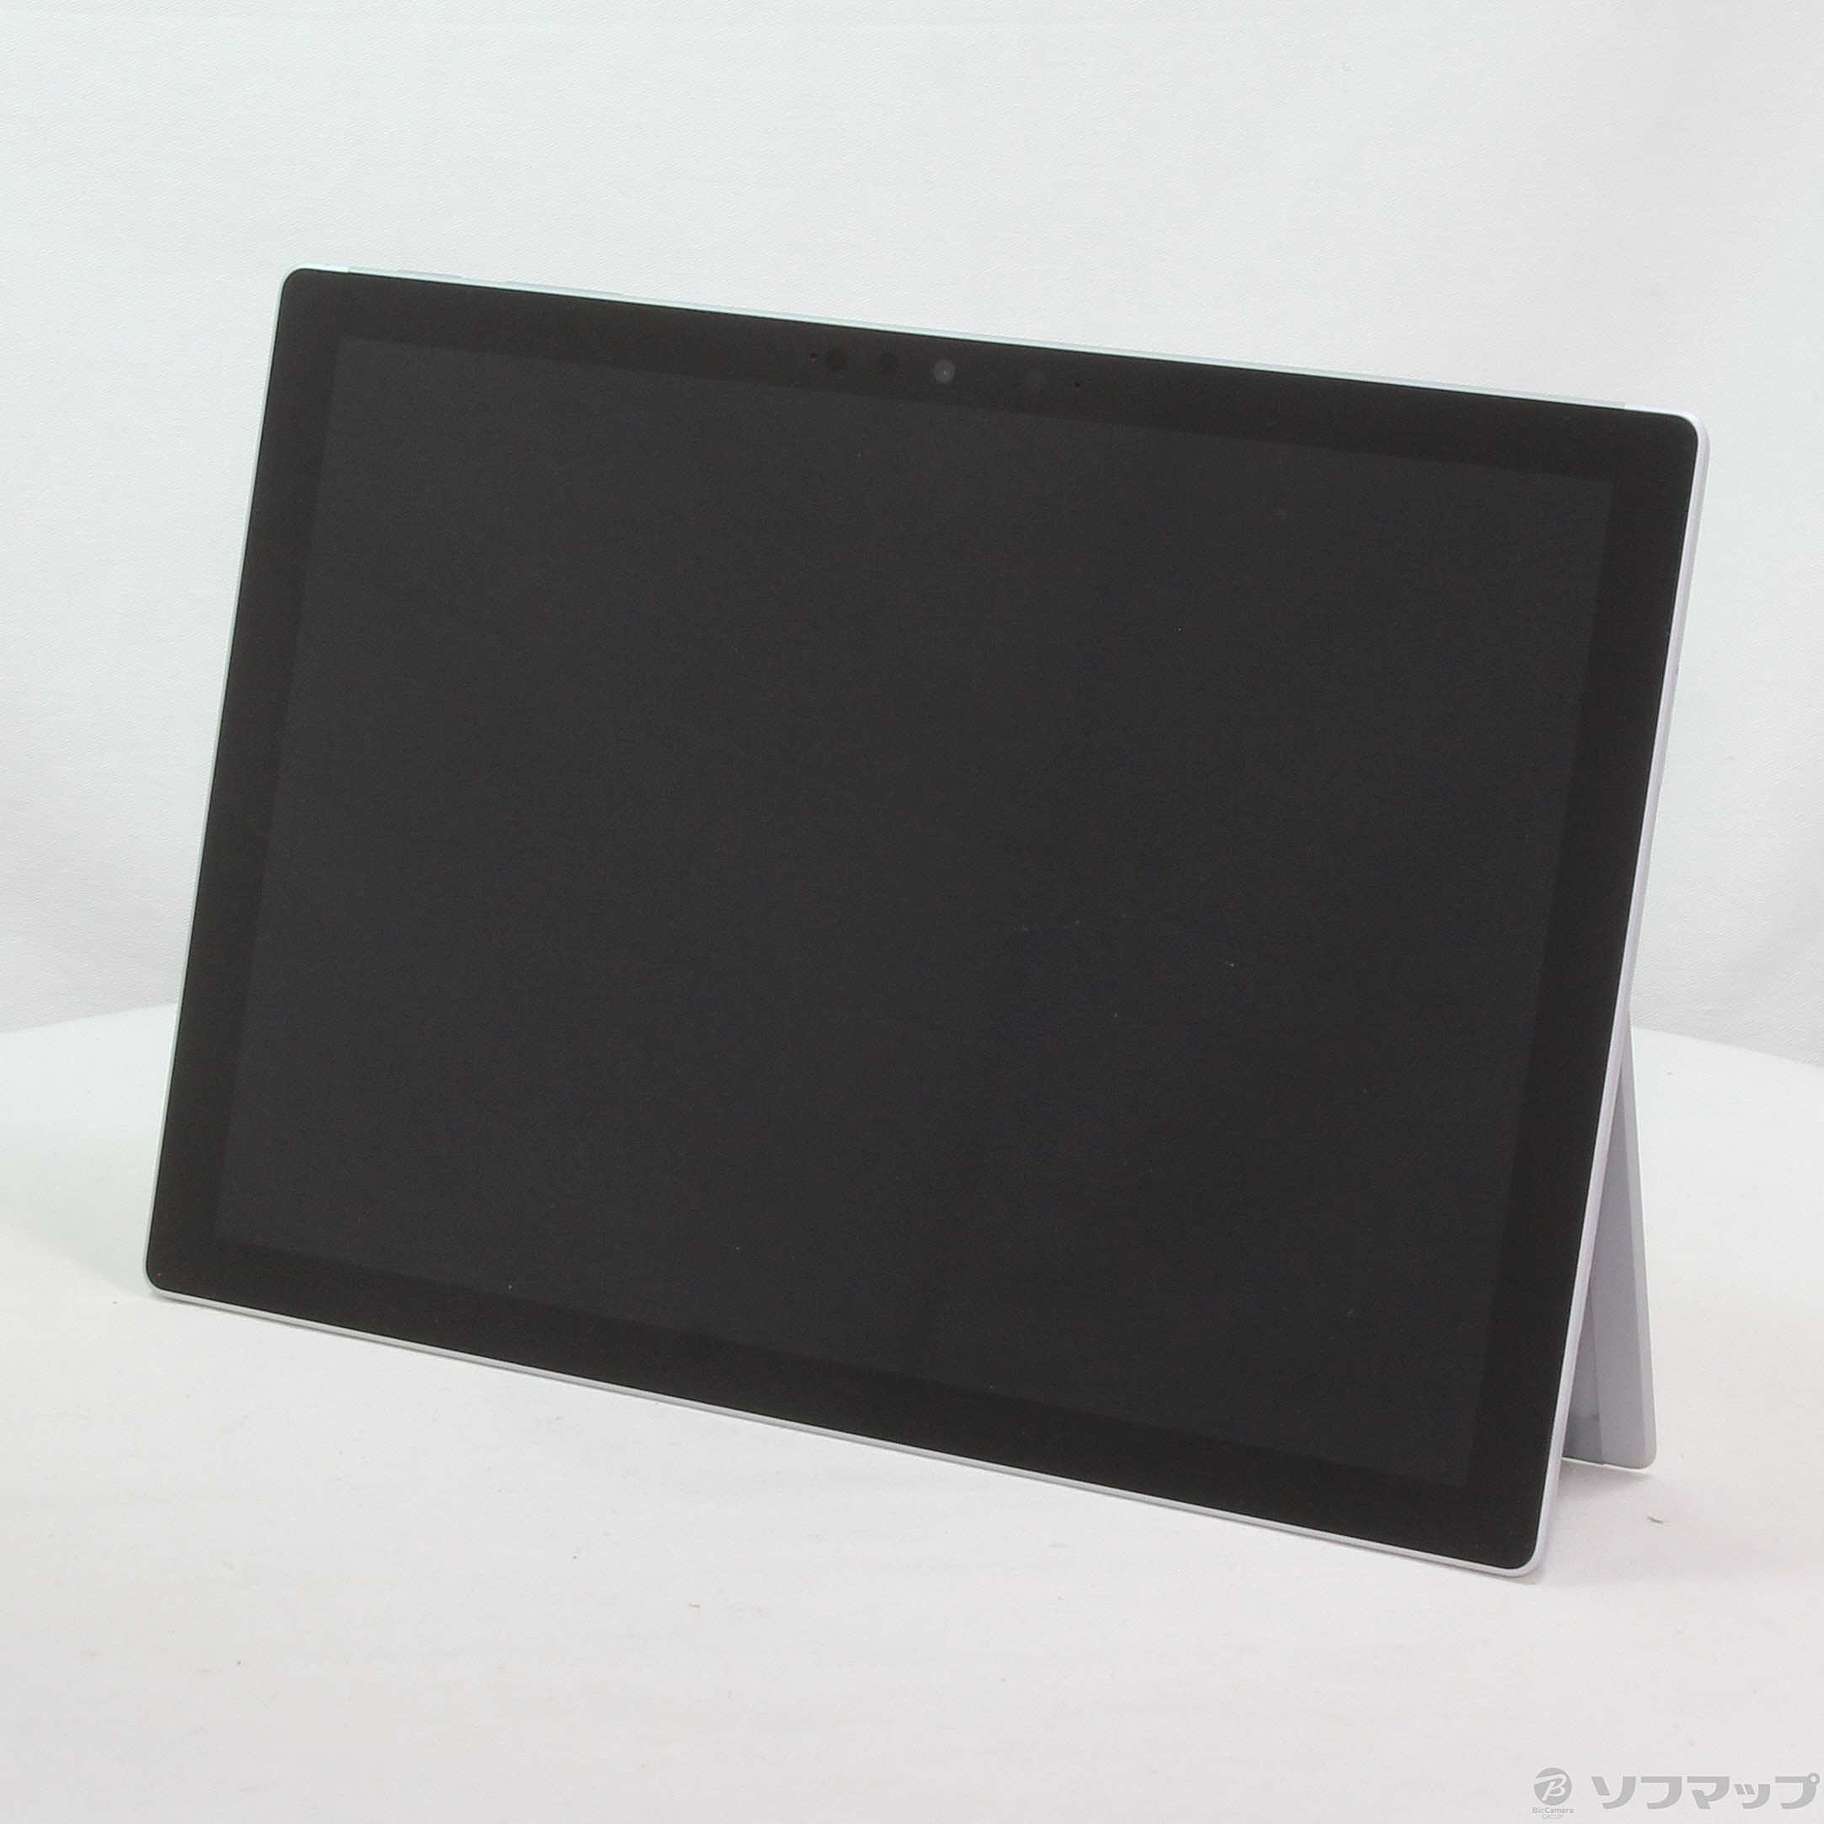 中古】Surface Pro7 〔Core i3／4GB／SSD128GB〕 VDH-00012 プラチナ